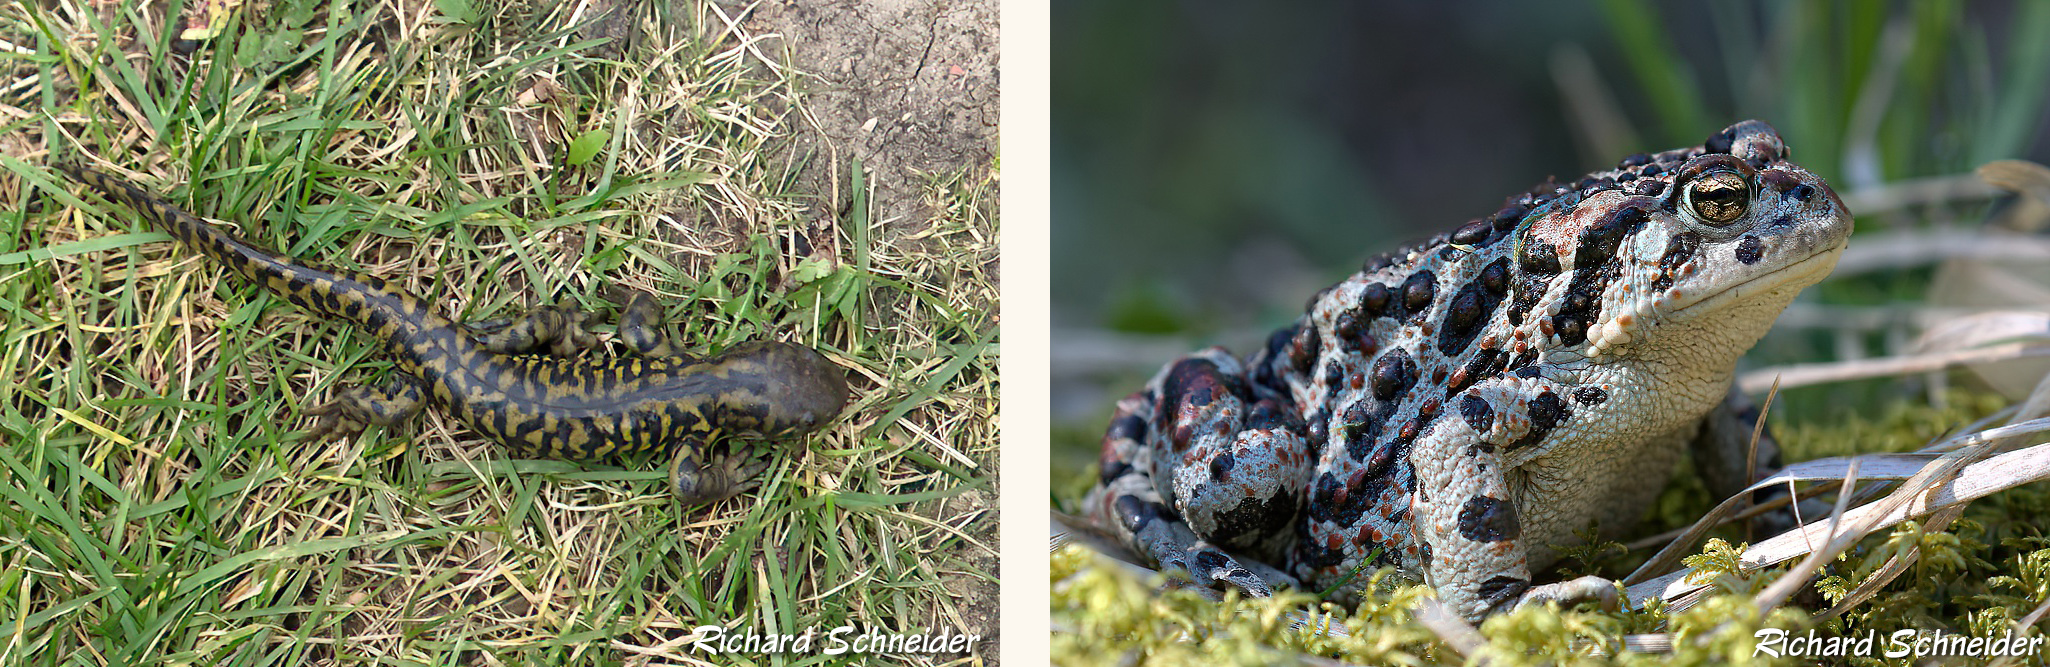 Salamander and toad - R Schneider